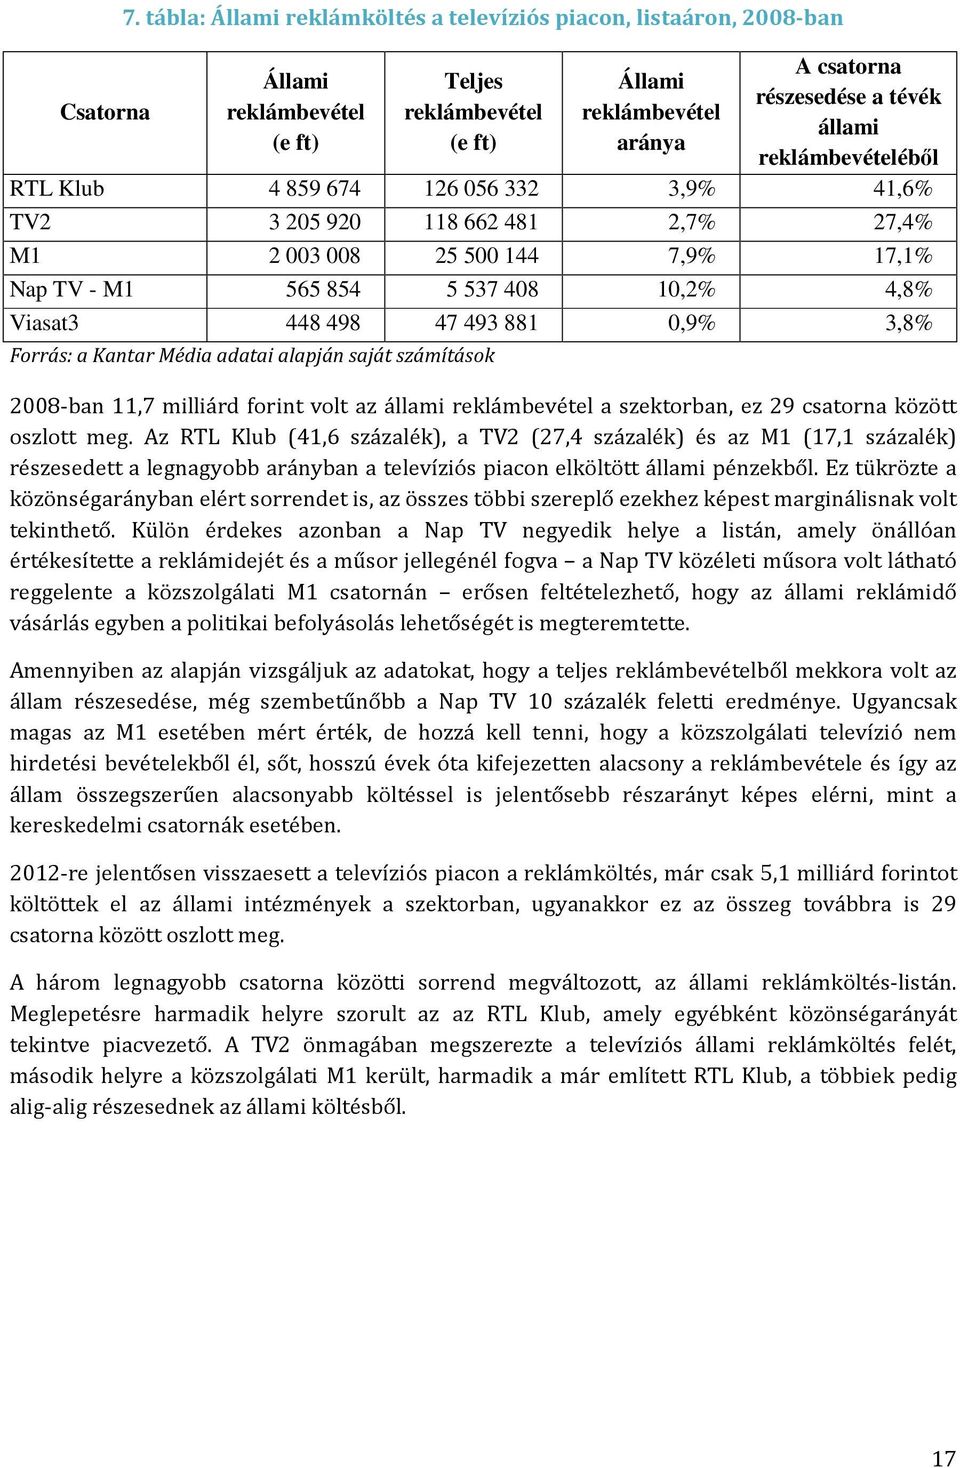 között oszlott meg. Az RTL Klub (41,6 százalék), a TV2 (27,4 százalék) és az M1 (17,1 százalék) részesedett a legnagyobb arányban a televíziós piacon elköltött állami pénzekből.